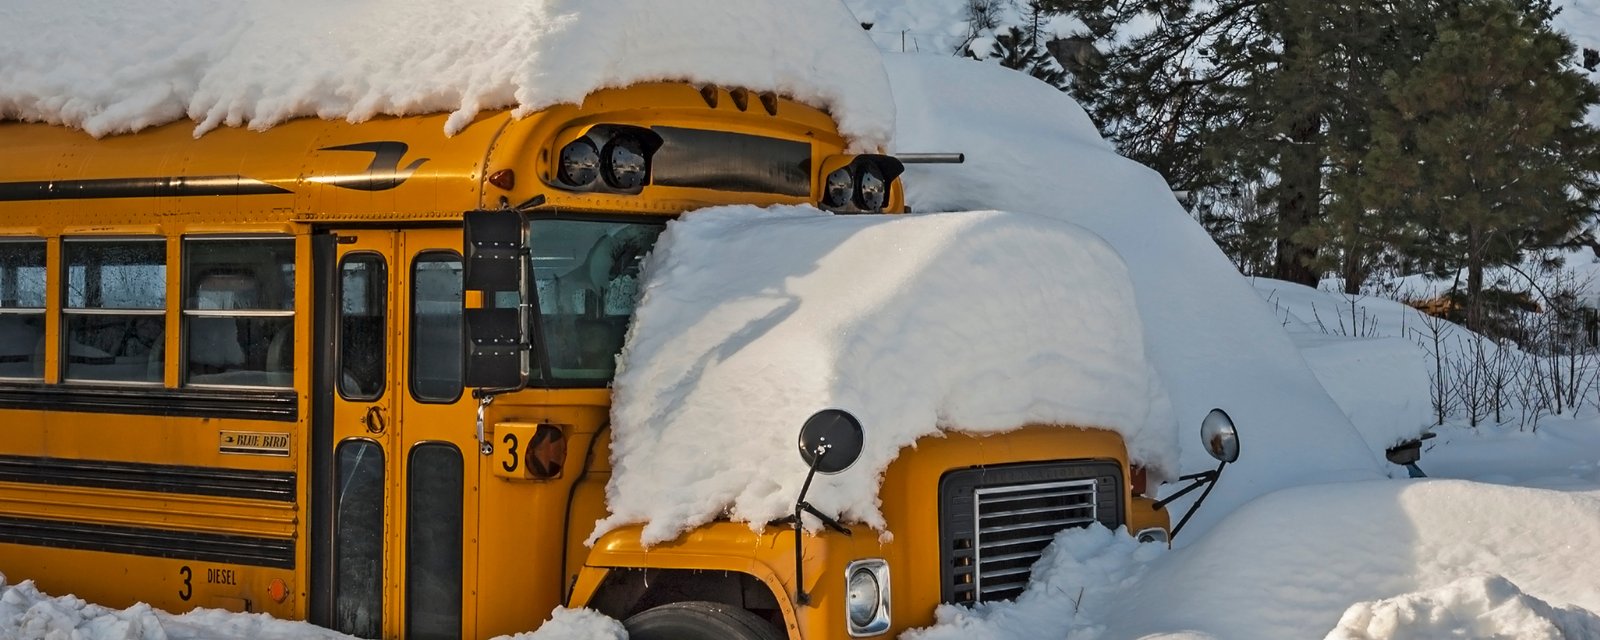 Des élèves de Chaudière-Appalaches sont forcés de dormir à l'école à cause d'une tempête de neige